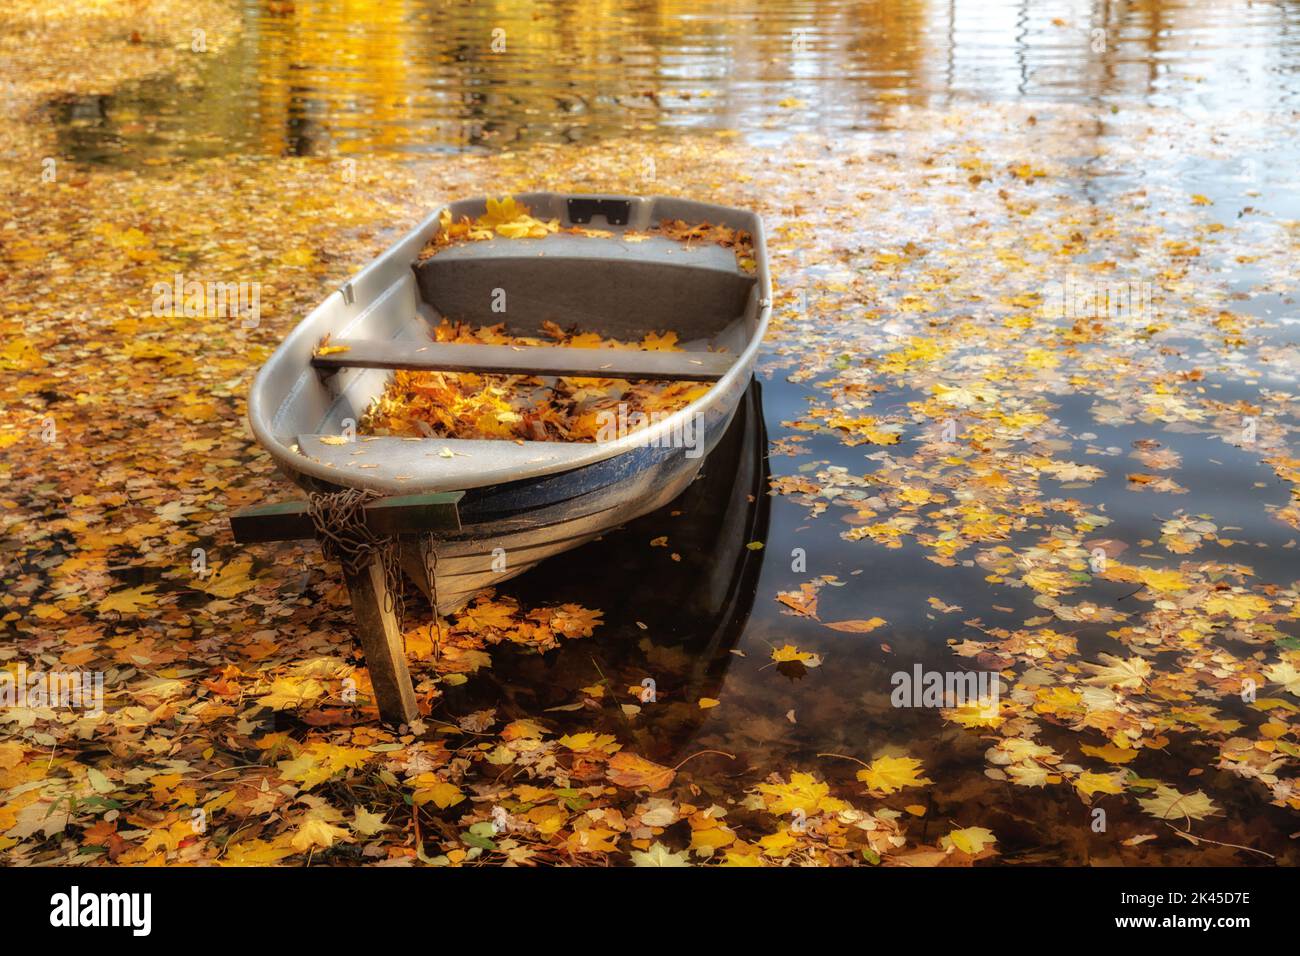 Farbenfrohe Herbstlandschaft. Holzboot auf dem See, übersät mit gefallenen gelben Blättern. Natürlicher, saisonaler Hintergrund Stockfoto